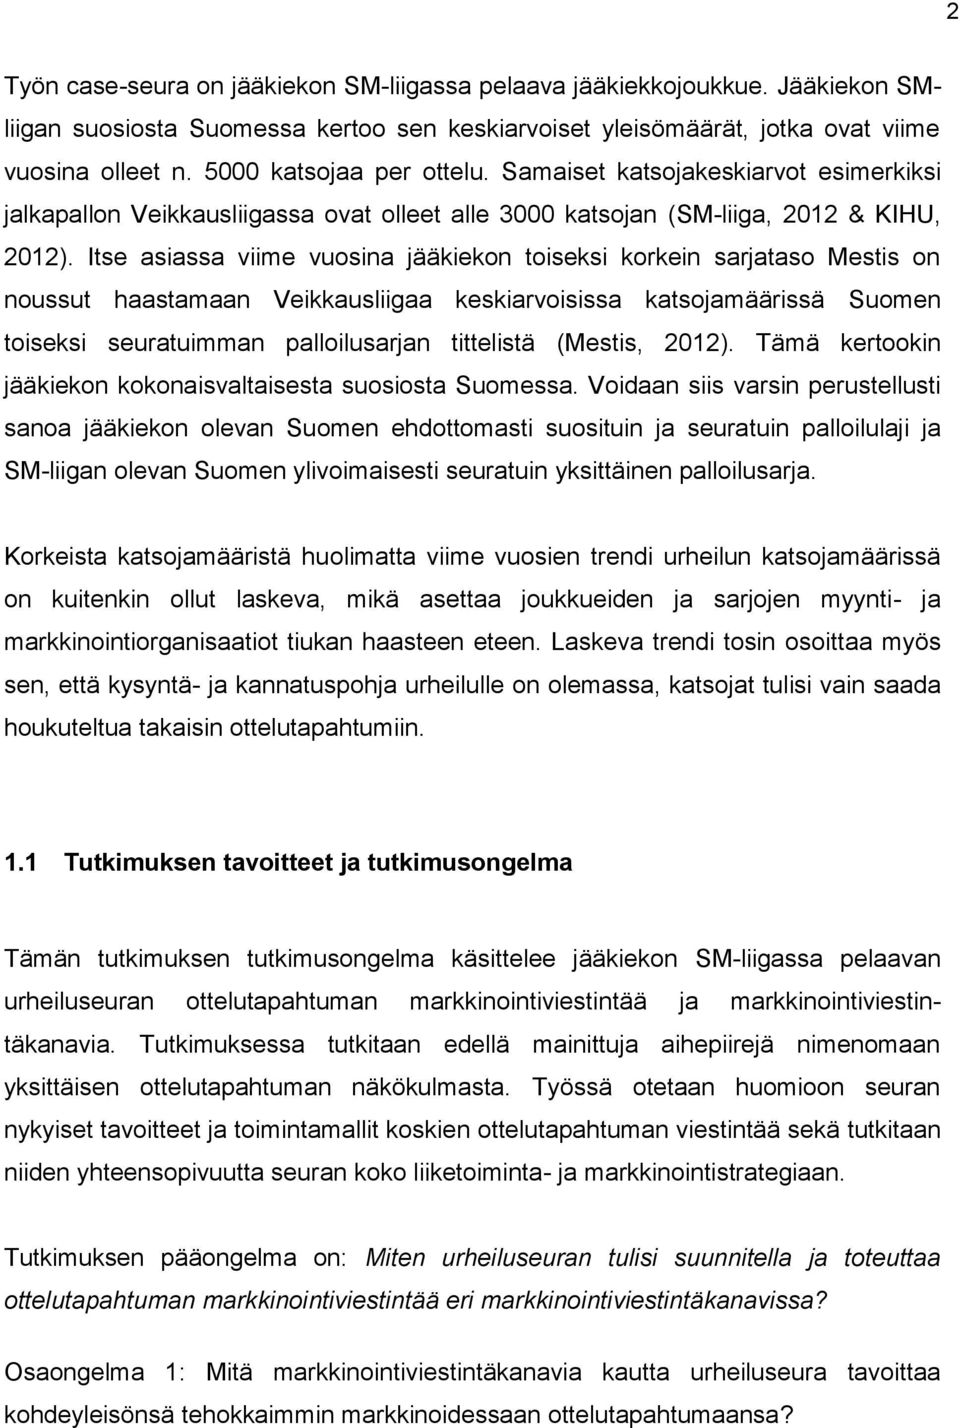 Itse asiassa viime vuosina jääkiekon toiseksi korkein sarjataso Mestis on noussut haastamaan Veikkausliigaa keskiarvoisissa katsojamäärissä Suomen toiseksi seuratuimman palloilusarjan tittelistä